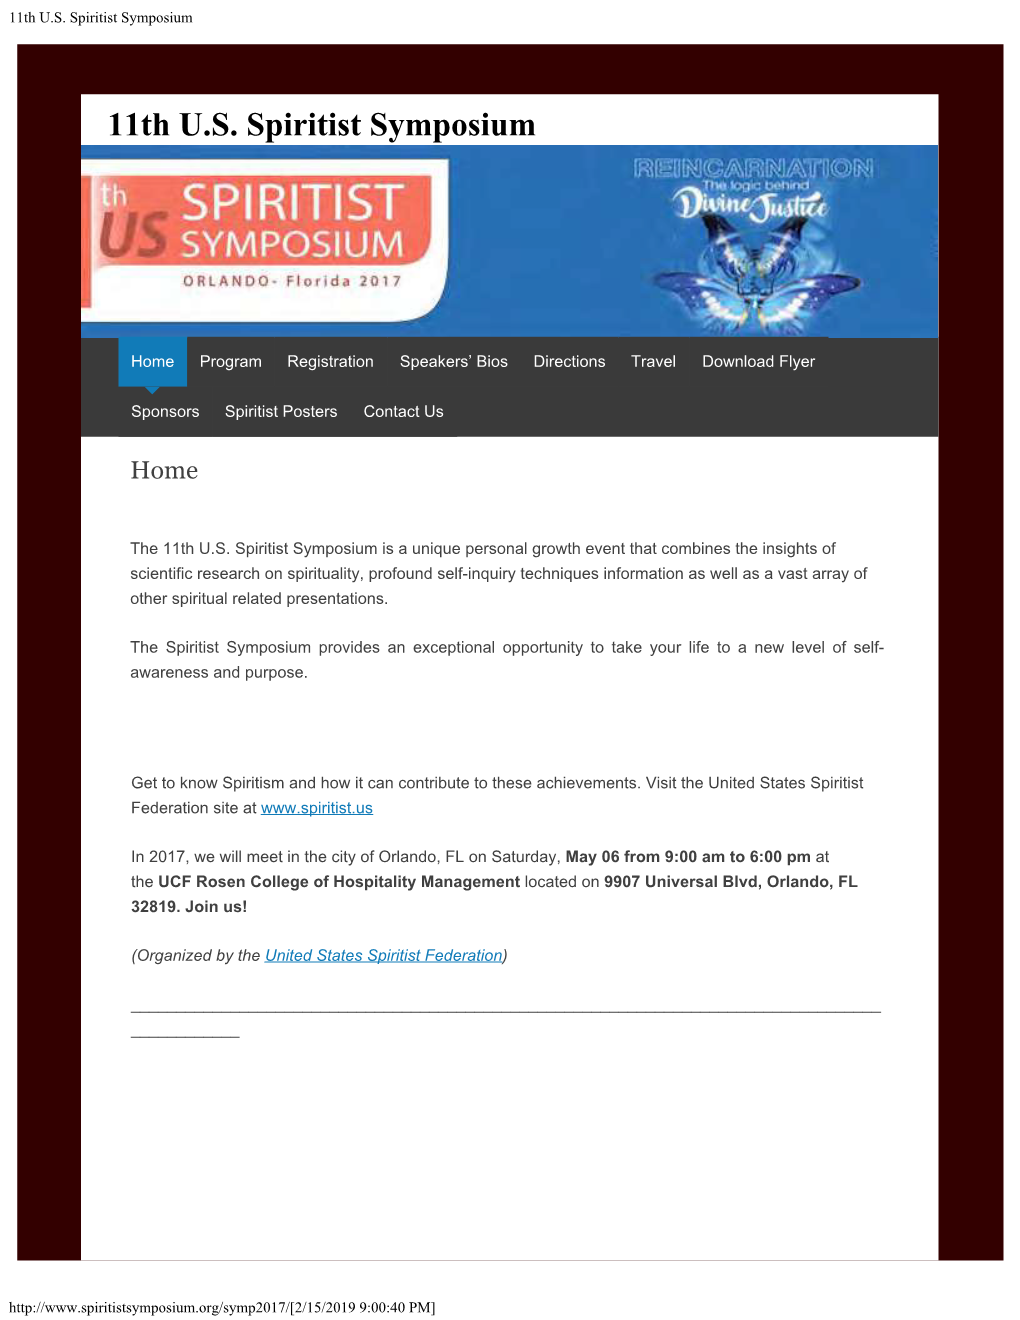 11Th U.S. Spiritist Symposium